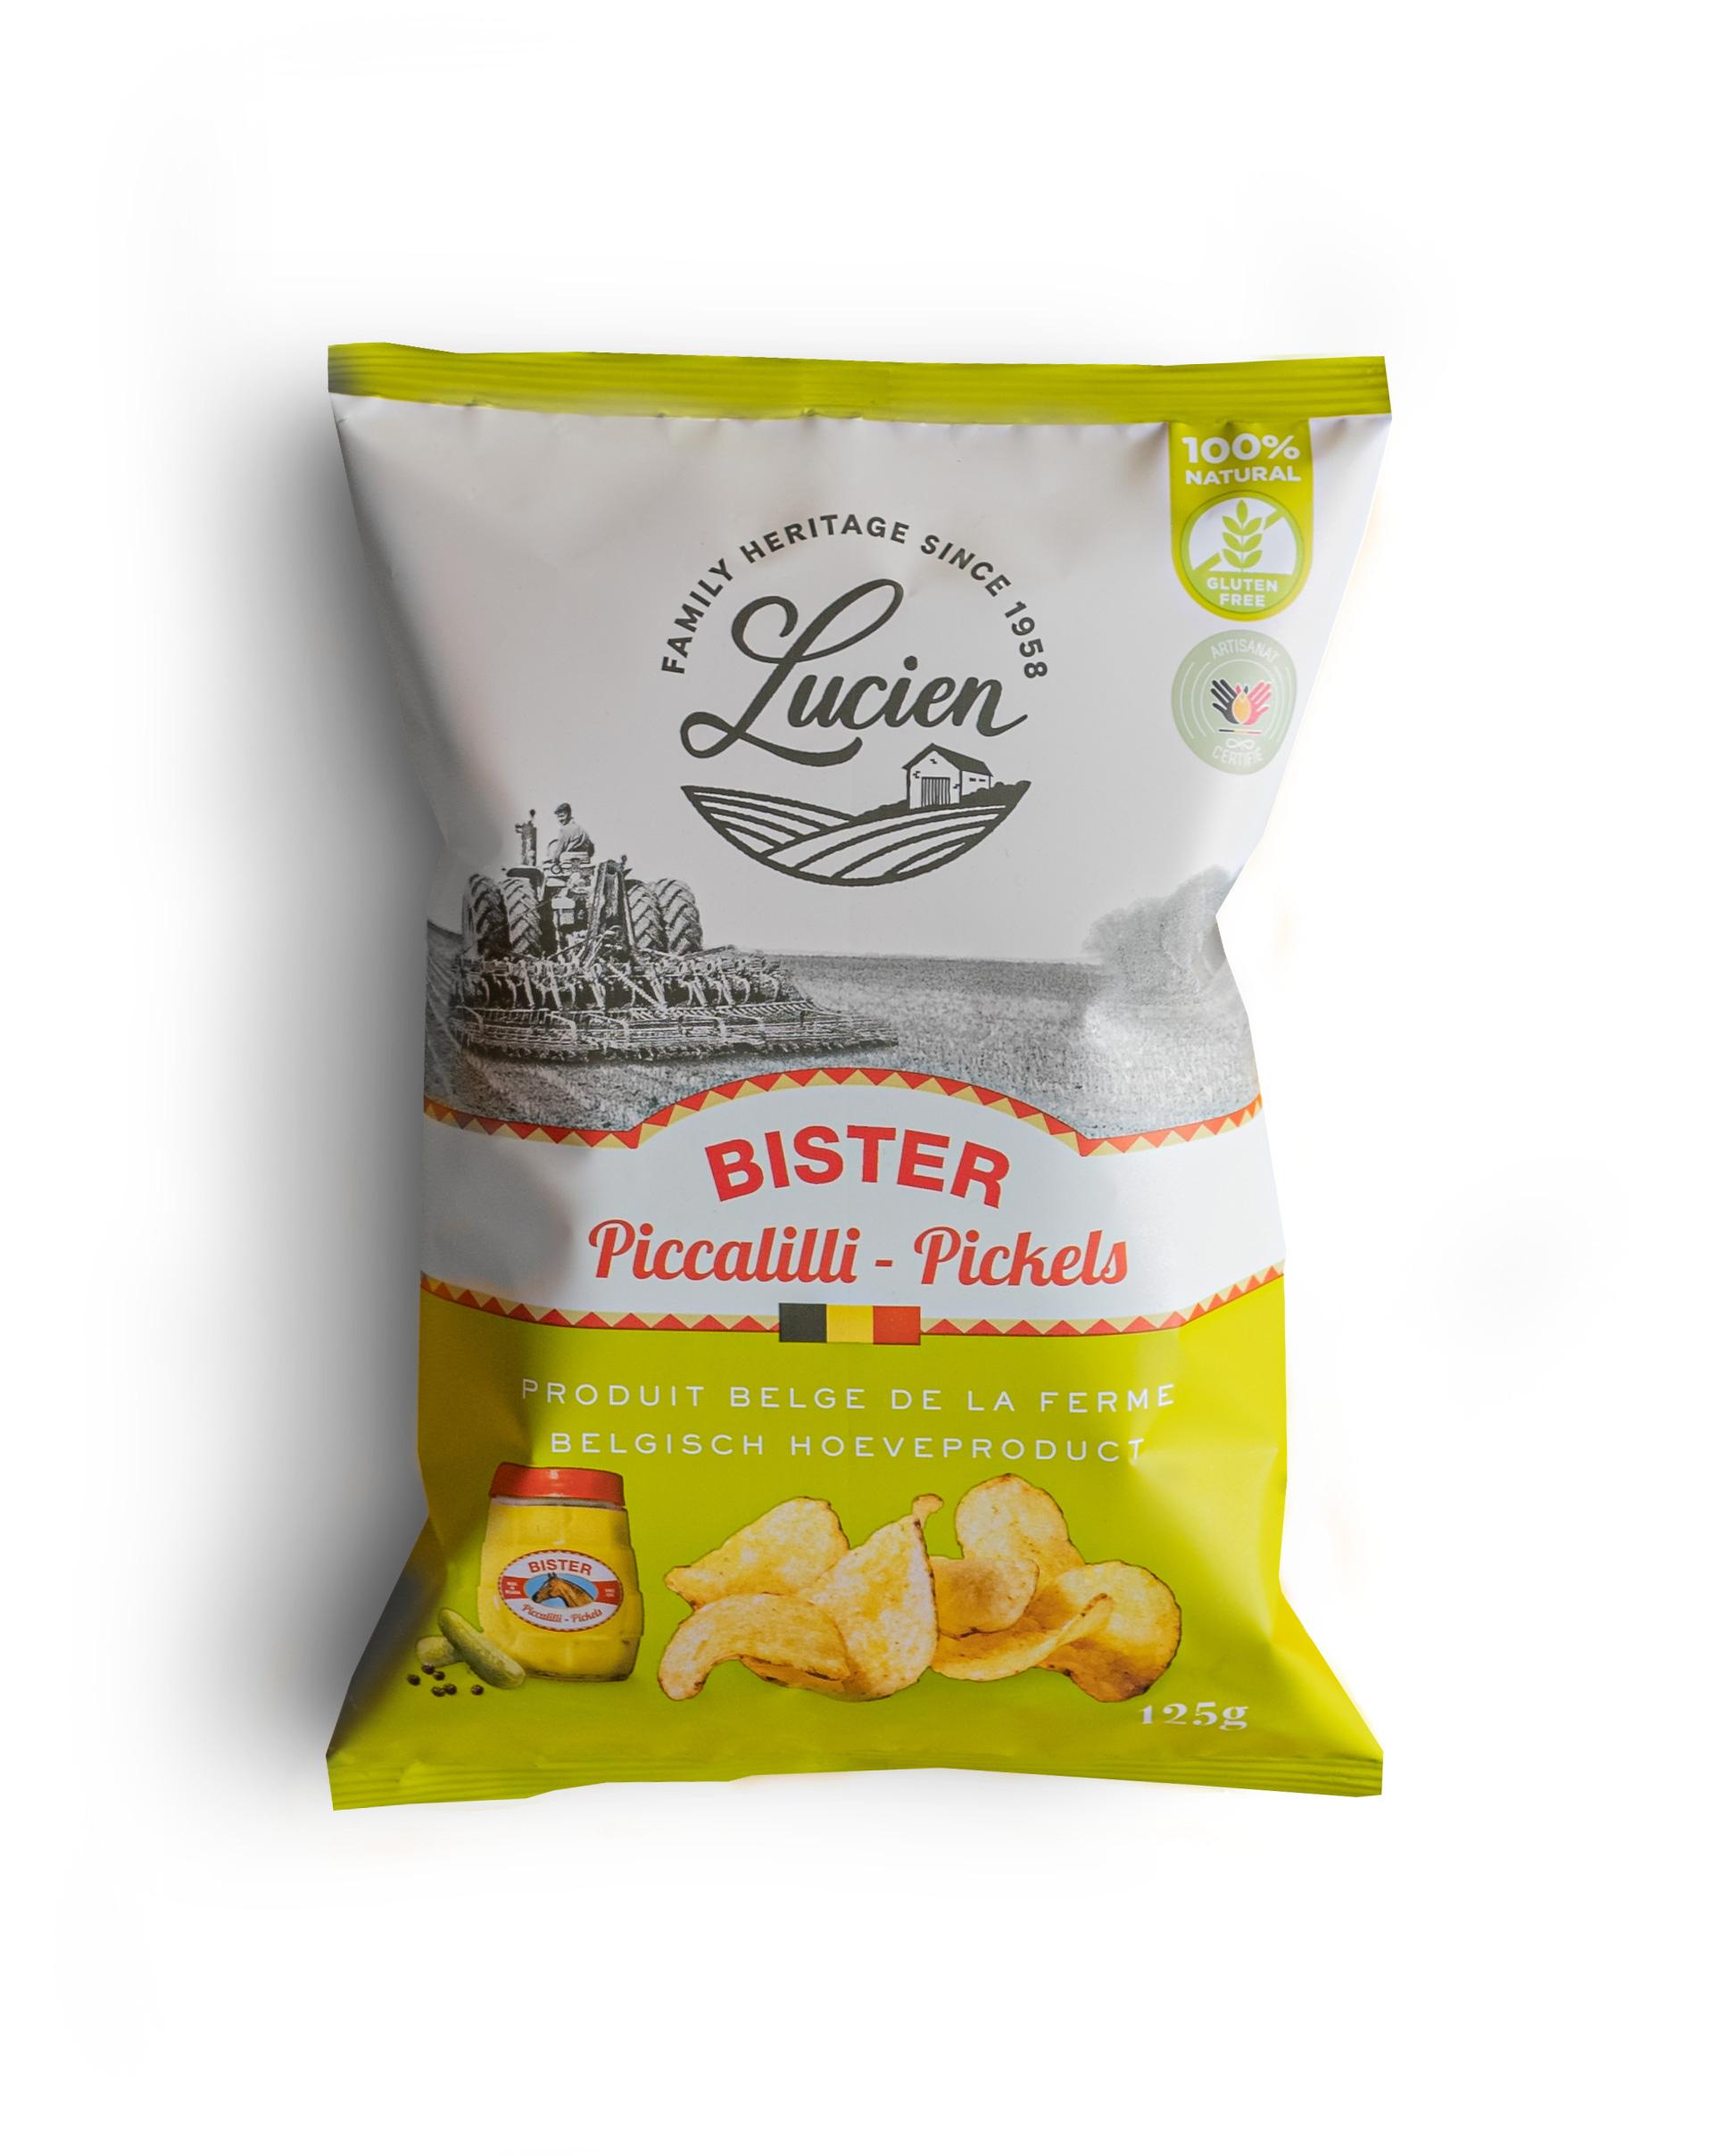 Chips de Lucien: Bister